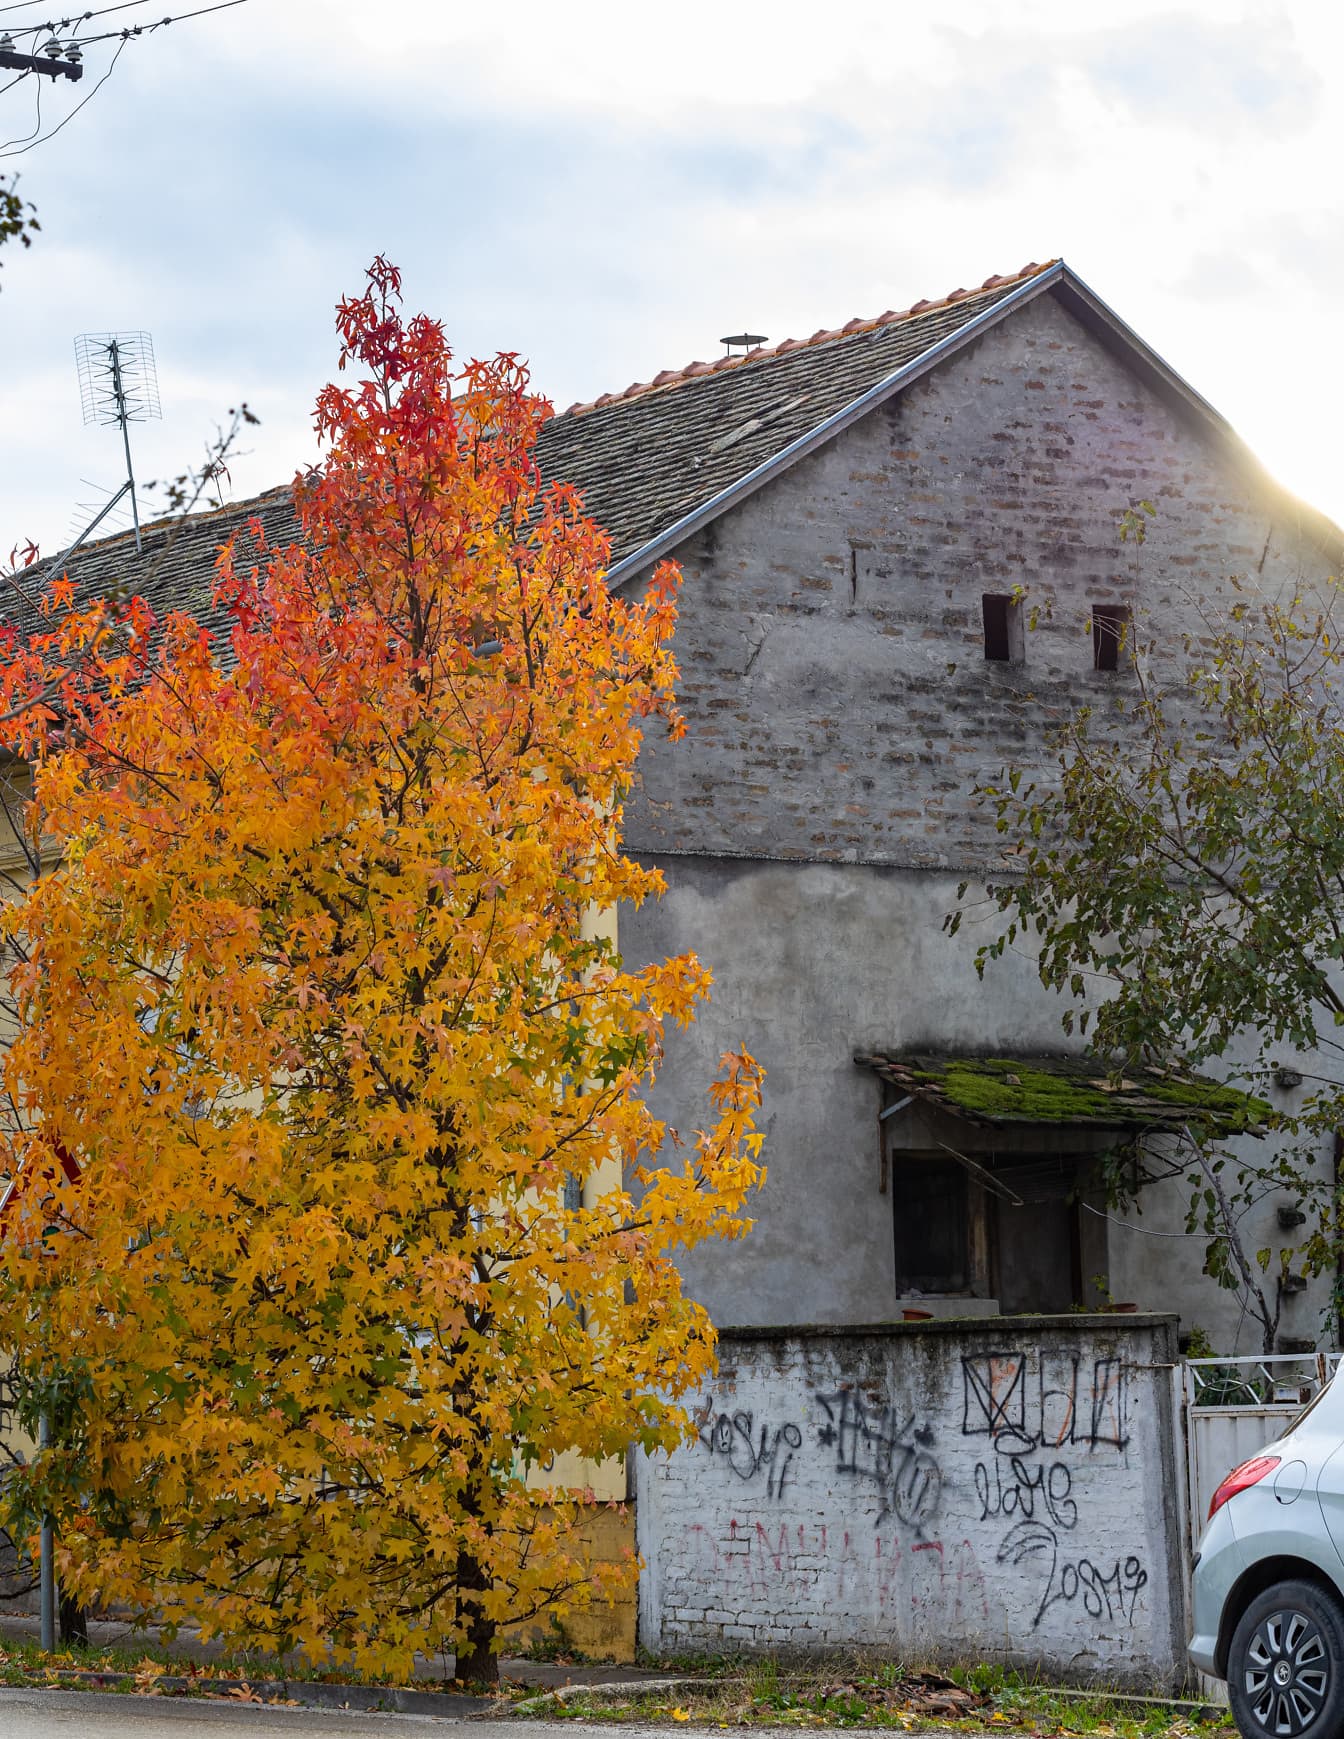 Oranžovo žlté listy na strome na ulici a rozpadajúci sa dom v pozadí